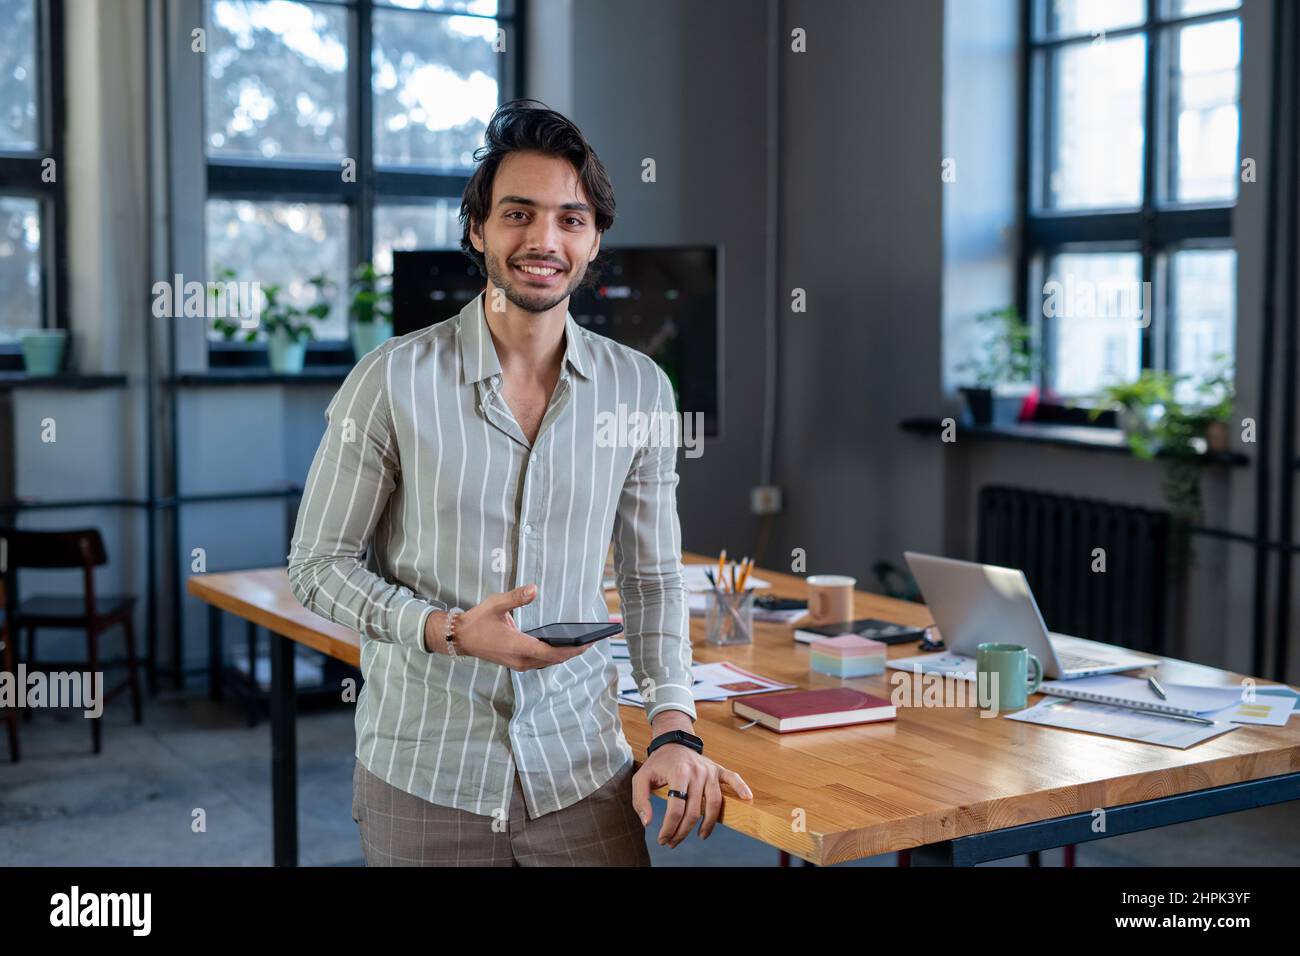 Jeune employé souriant dans une chemise rayée décontractée debout près du lieu de travail contre table avec des papiers financiers et d'autres fournitures Banque D'Images